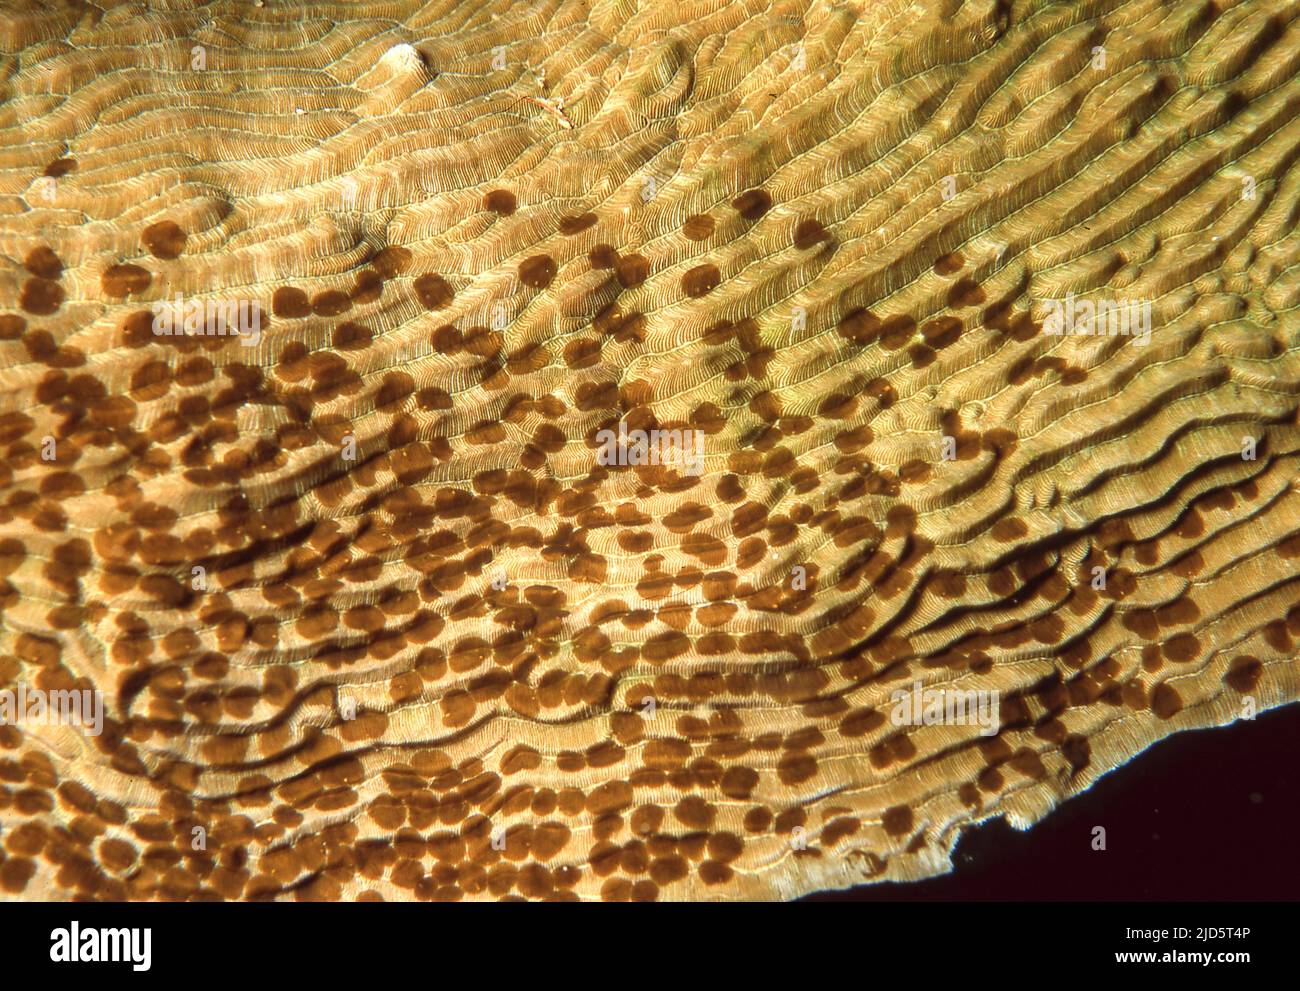 Acoel, platworm commensali del genere Wamaa che vive sulla pietra corallo Tubastraea sp. Foto da una barriera corallina in Indonesia. Foto Stock